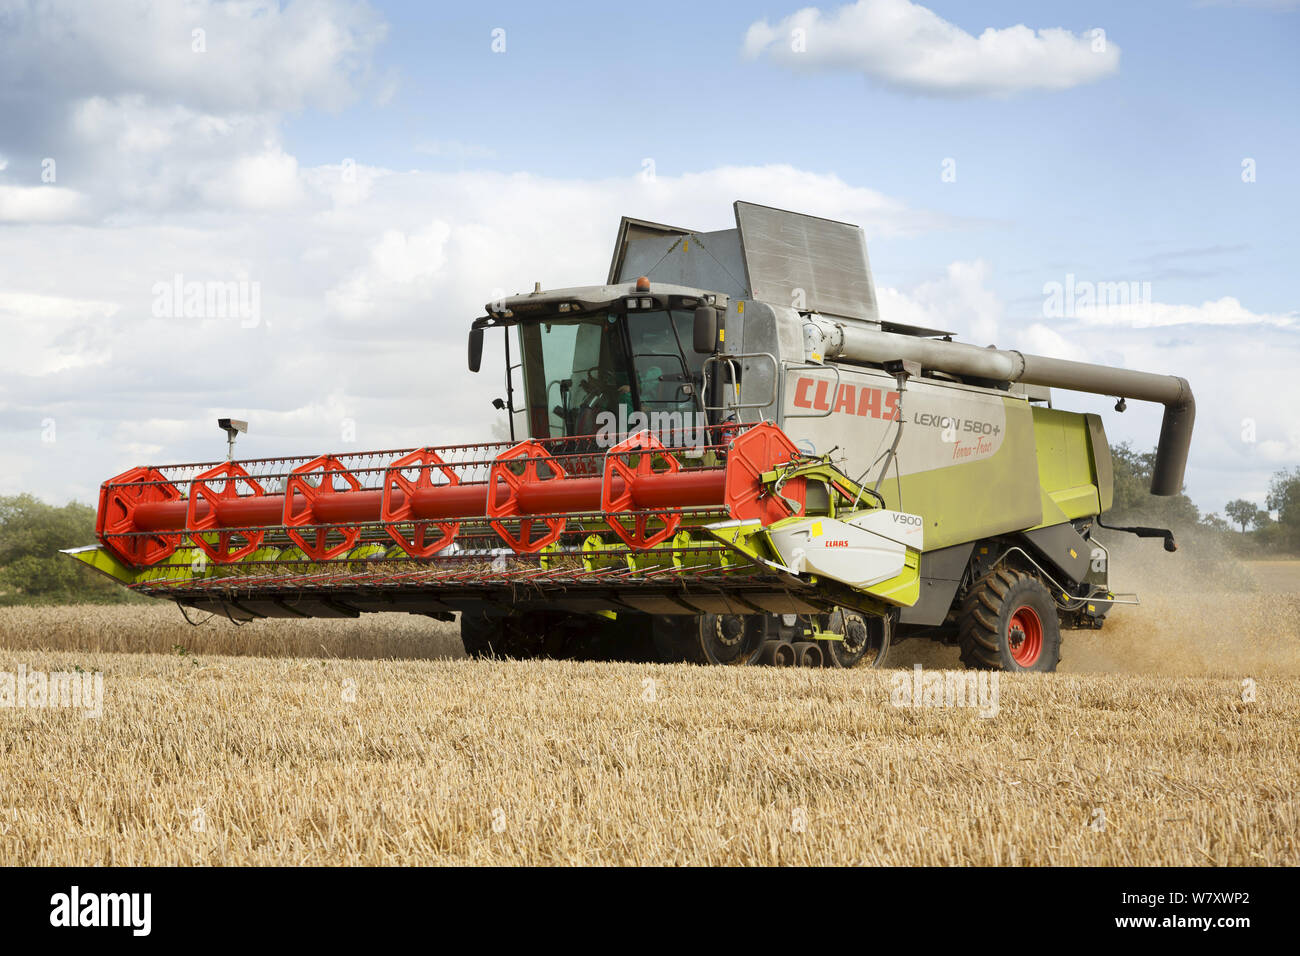 Buckingham, Royaume-Uni - 19 août 2014. Rendmt Lexion Claas moissonneuse batteuse récoltes de blé dans un champ dans le Buckinghamshire UK Banque D'Images